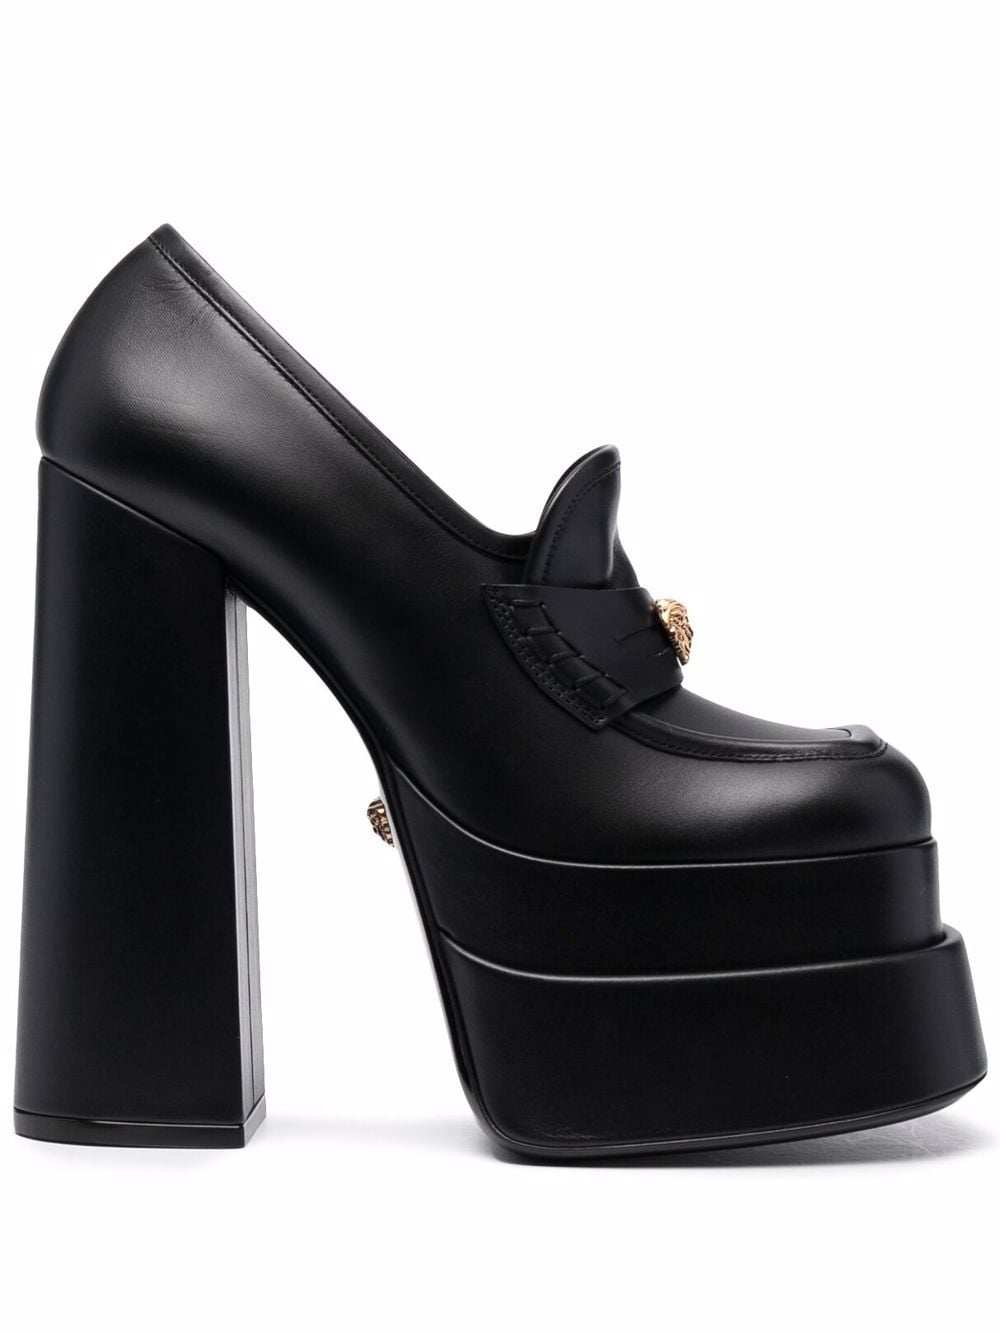 ХочуМогу туфли Versace в стиле Братц и 4 бюджетных аналога